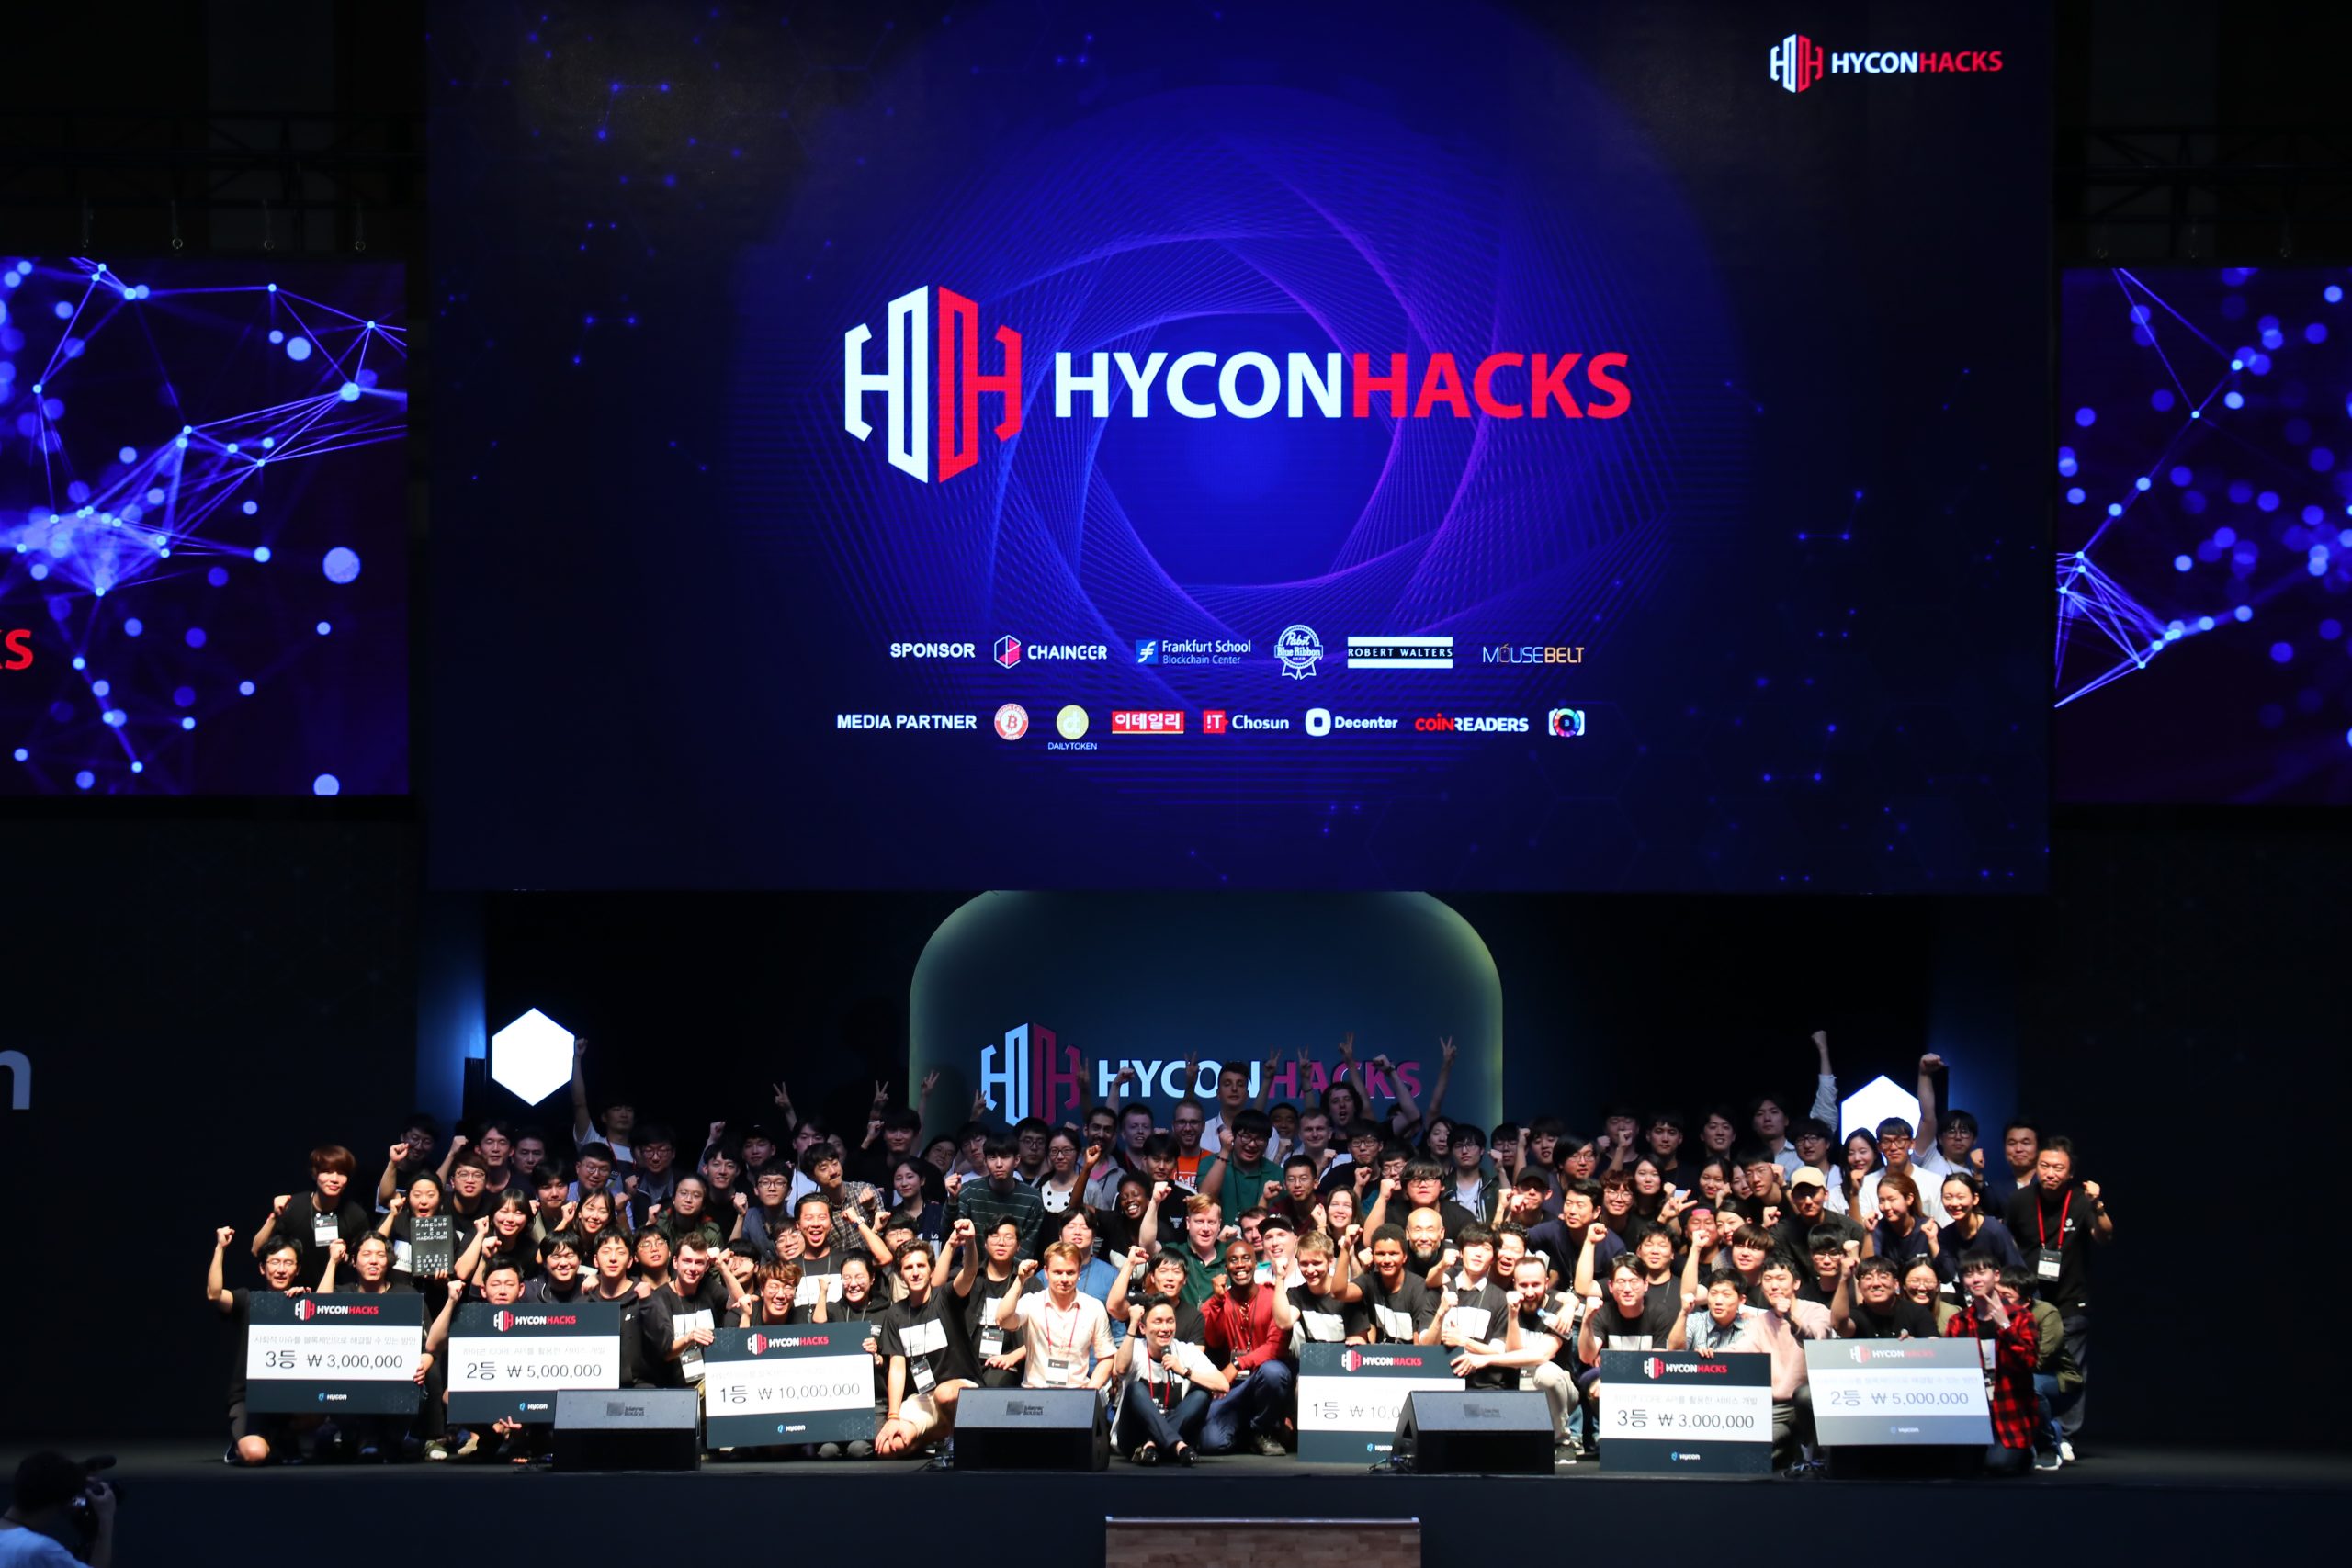 2018-하이콘핵스-해커톤-블록체인-기업행사-행사장-단체사진